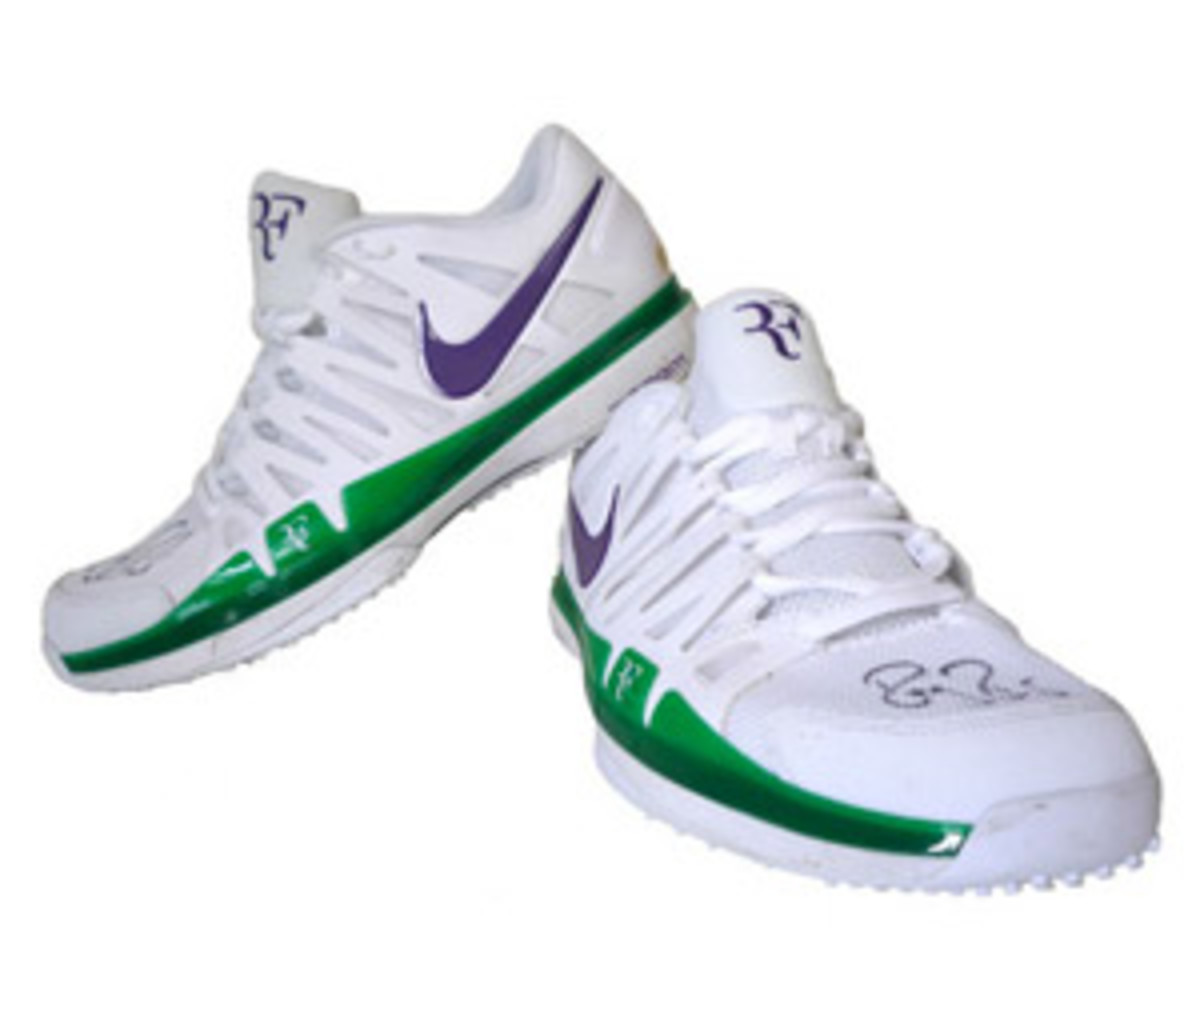 Roger Federer shoes